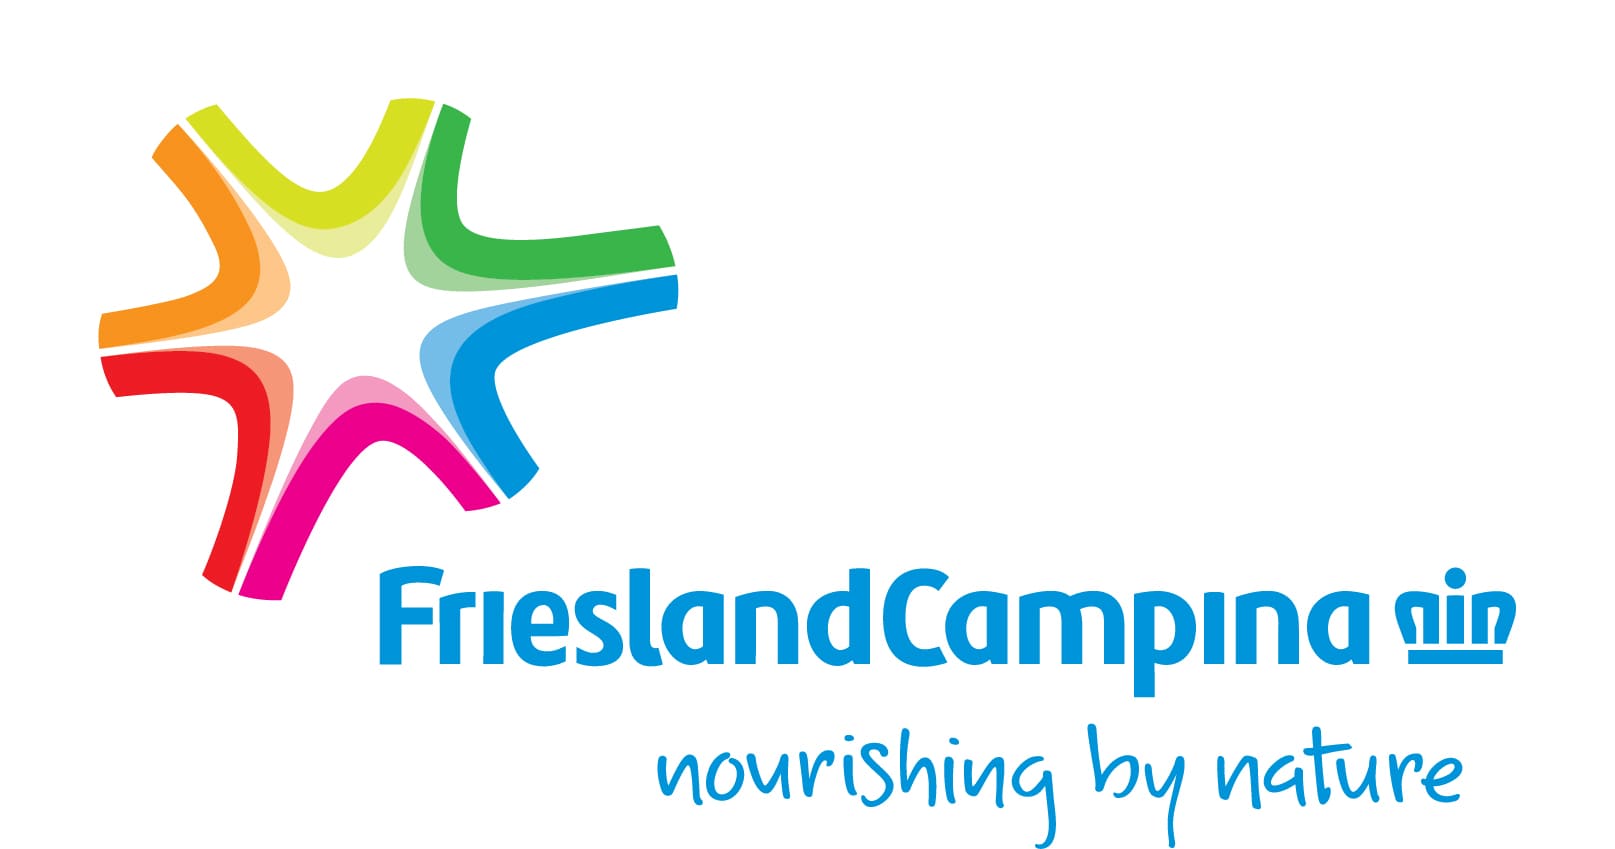 Friesland Campina logo